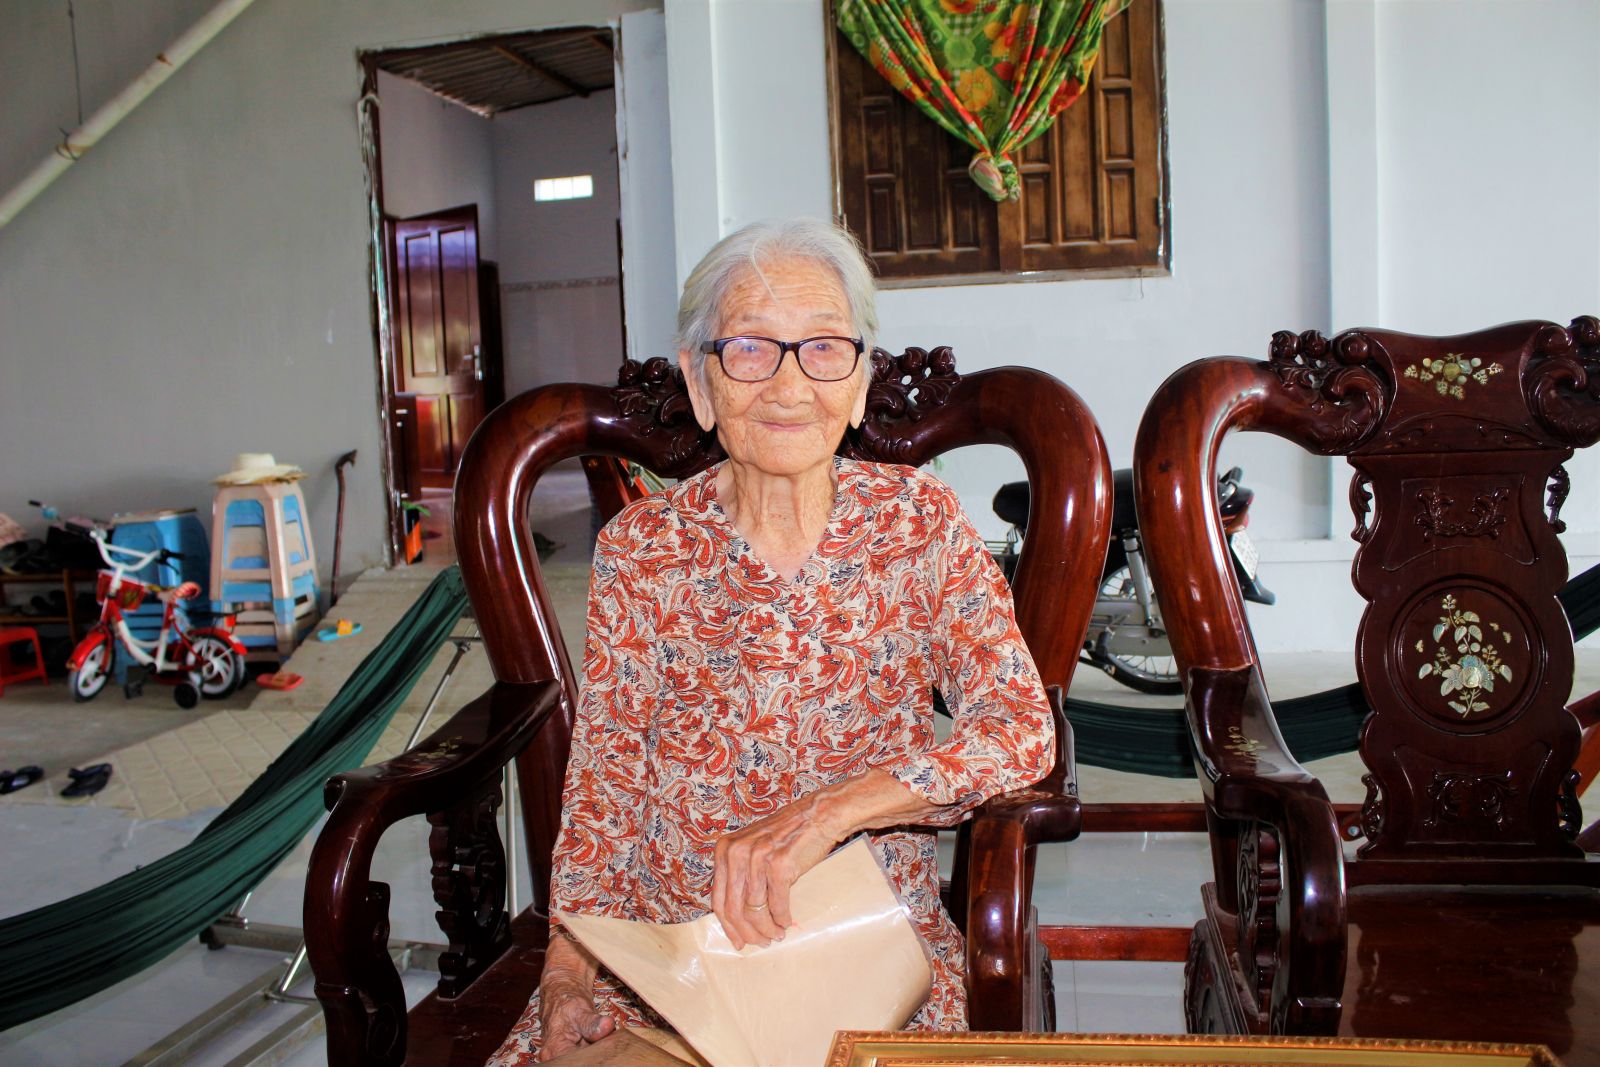 Mẹ Lê Thị Khởi dù đã hơn 100 tuổi những vẫn còn rất minh mẫn, thường xuyên nhắc nhở con cháu tiếp nối truyền thống anh hùng của cha ông